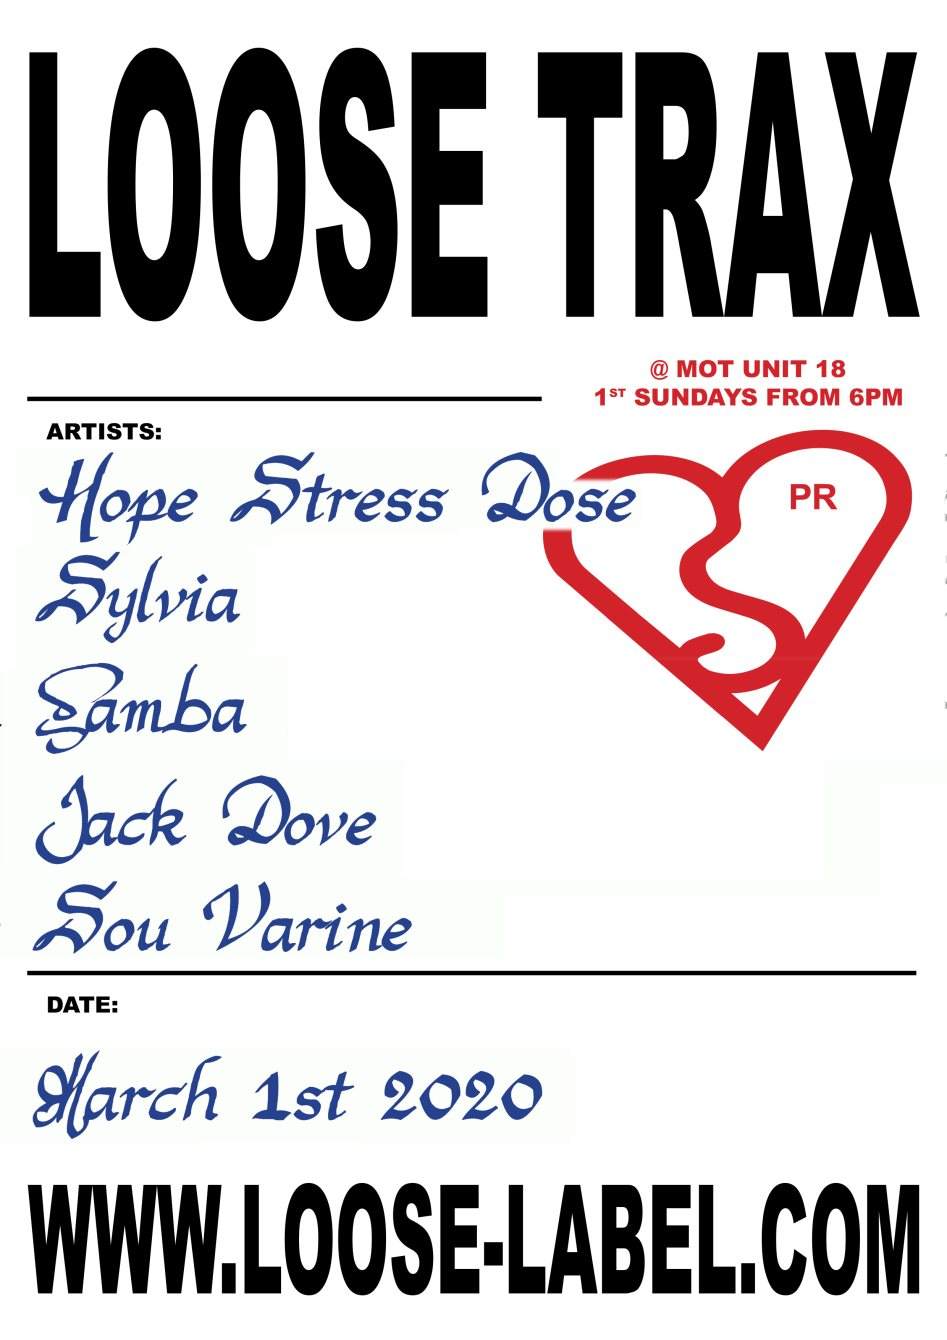 Loose Trax 6 - Página trasera